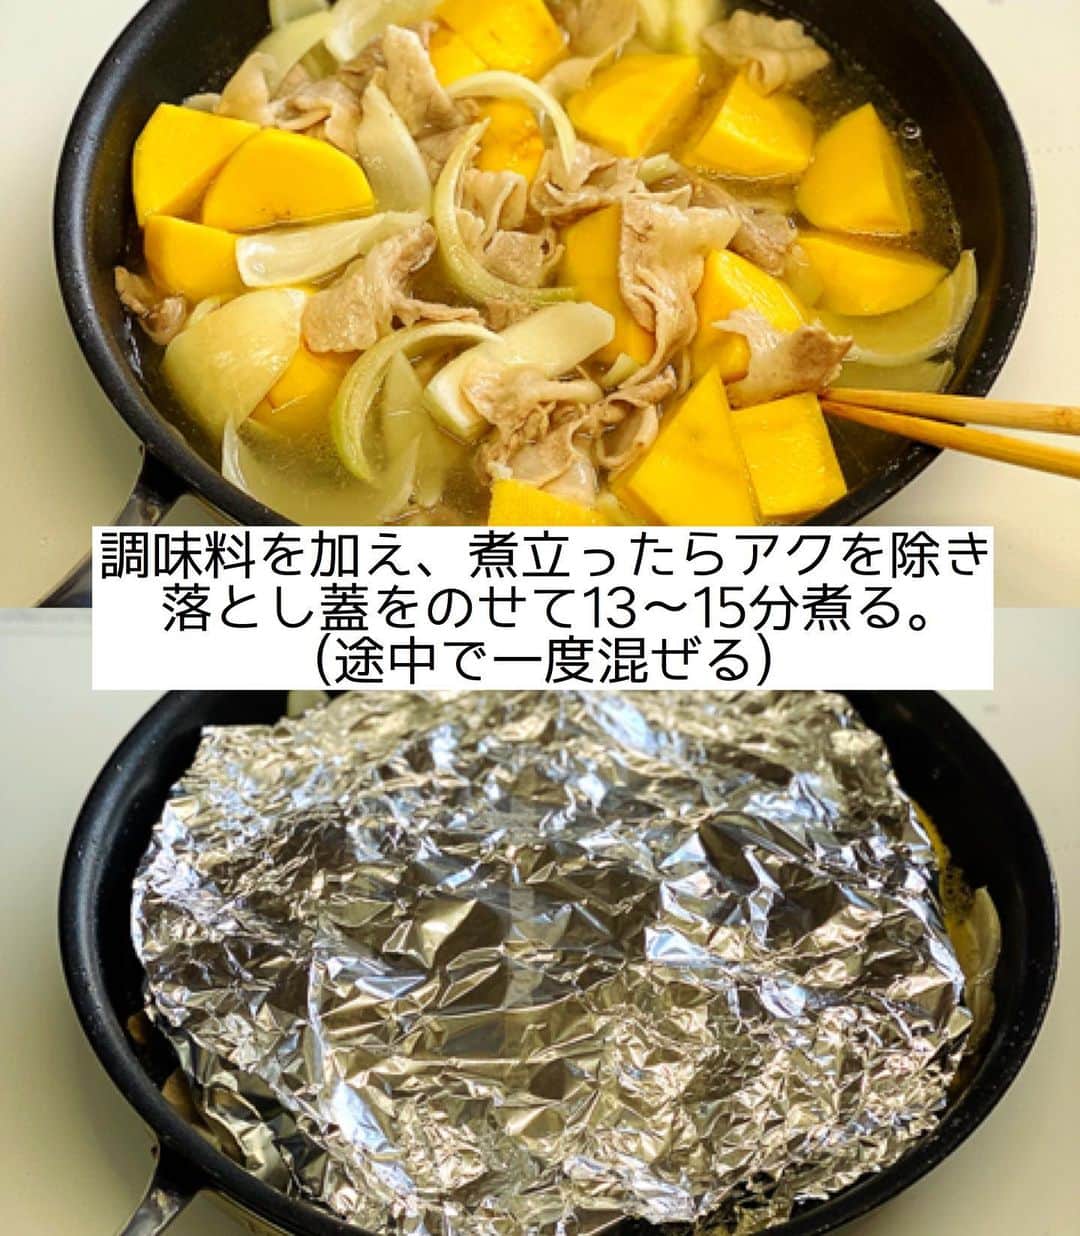 Mizuki【料理ブロガー・簡単レシピ】さんのインスタグラム写真 - (Mizuki【料理ブロガー・簡単レシピ】Instagram)「・﻿ 【#レシピ 】ーーーーーーーーーーーー﻿ あっさりコクうま！塩バター肉じゃが﻿ ーーーーーーーーーーーーーーーーーー﻿ ﻿ ﻿ ﻿ おはようございます(*^^*)﻿ ﻿ 今日ご紹介させていただくのは﻿ \ 塩バター肉じゃか /﻿ #今どき和食 の［うま塩肉じゃが］に﻿ バターを加えてアレンジしました♩﻿ ﻿ あっさり塩味のスープに﻿ バターのコクと風味が相性抜群♡﻿ 大人は粗挽き黒こしょうを﻿ たっぷり振って召し上がれ♩﻿ ﻿ フライパンひとつでできるので﻿ よかったらお試し下さいね(*´艸`)﻿ ﻿ ﻿ ﻿ ＿＿＿＿＿＿＿＿＿＿＿＿＿＿＿＿＿＿＿＿﻿ 【2人分】﻿ 豚バラ薄切り肉...150g﻿ じゃがいも...3個(400g)﻿ 玉ねぎ...1/2個﻿ サラダ油...小1﻿ ●水...300ml﻿ ●酒・みりん...各大2﻿ ●鶏がらスープ...小1﻿ ●塩...小1/3﻿ バター...10g﻿ 粗挽き黒こしょう...少々﻿ ﻿ 1.豚肉は4cm長さに切る。じゃがいもは4cm大に切る。玉ねぎは2cm幅のくし形に切る。﻿ 2.フライパンにサラダ油を中火で熱して豚肉を炒める。色が変わったらじゃがいもと玉ねぎも加えて2分炒める。﻿ 3.●を加え、煮立ったらアクを除き、落とし蓋をのせて13〜15分煮る(途中で一度混ぜる)。仕上げにバターをのせ、粗挽き黒こしょうを振る。﻿ ￣￣￣￣￣￣￣￣￣￣￣￣￣￣￣￣￣￣￣￣﻿ ﻿ ﻿ ﻿ 《ポイント》﻿ ︎直径26cmのフライパンを使用しています♩﻿ ♦︎落とし蓋はアルミホイルでOK♩﻿ ♦︎バターは仕上げに加えて溶かしてしまっても◎﻿ ♦︎じゃがいもが色鮮やかなのはインカのめざめを使用したからです(笑)﻿ ﻿ ﻿ ﻿ ﻿ ﻿ ﻿ ﻿ ﻿ ⭐️発売中⭐️﻿ ＿＿＿＿＿＿＿＿＿＿＿＿＿＿＿＿＿＿﻿ ホケミレシピの決定版♩﻿ \はじめてでも失敗しない/﻿ 📙#ホットケーキミックスのお菓子 📙﻿ ﻿ NHKまる得マガジンテキスト☆﻿ ホットケーキミックスで﻿ 📗絶品おやつ&意外なランチ📗﻿ ﻿ しんどくない献立、考えました♩﻿ \15分でいただきます/﻿ 📕#Mizukiの2品献立 📕﻿ ﻿ 和食をもっとカジュアルに♩﻿ \毎日のごはんがラクになる/﻿ 📘Mizukiの今どき和食 📘﻿ ﻿ 重版しました！﻿ ありがとうございます😭﻿ 📗ラクしておいしい！#1品晩ごはん 📗﻿ ﻿ 摂食障害から料理研究家になるまでを綴った﻿ はじめてのエッセイ本﻿ 📙#普通のおいしいをつくるひと 📙﻿ ￣￣￣￣￣￣￣￣￣￣￣￣￣￣￣￣￣￣￣﻿ ﻿ ﻿ ﻿ ﻿ ﻿ ＿＿＿＿＿＿＿＿＿＿＿＿＿＿＿＿＿＿﻿ レシピを作って下さった際や﻿ レシピ本についてのご投稿には﻿ タグ付け( @mizuki_31cafe )して﻿ お知らせいただけると嬉しいです😊💕﻿ ￣￣￣￣￣￣￣￣￣￣￣￣￣￣￣￣￣￣﻿ ﻿ ﻿ ﻿ ﻿ ﻿ #肉じゃが#豚肉#じゃがいも#煮物#Mizuki#簡単レシピ#時短レシピ#節約レシピ#料理#フーディーテーブル#マカロニメイト#おうちごはん#デリスタグラマー#料理好きな人と繋がりたい#おうちごはんlover#写真好きな人と繋がりたい#foodpic#cooking#recipe#lin_stagrammer#foodporn#yummy#f52grams#塩バター肉じゃがm」2月2日 6時51分 - mizuki_31cafe